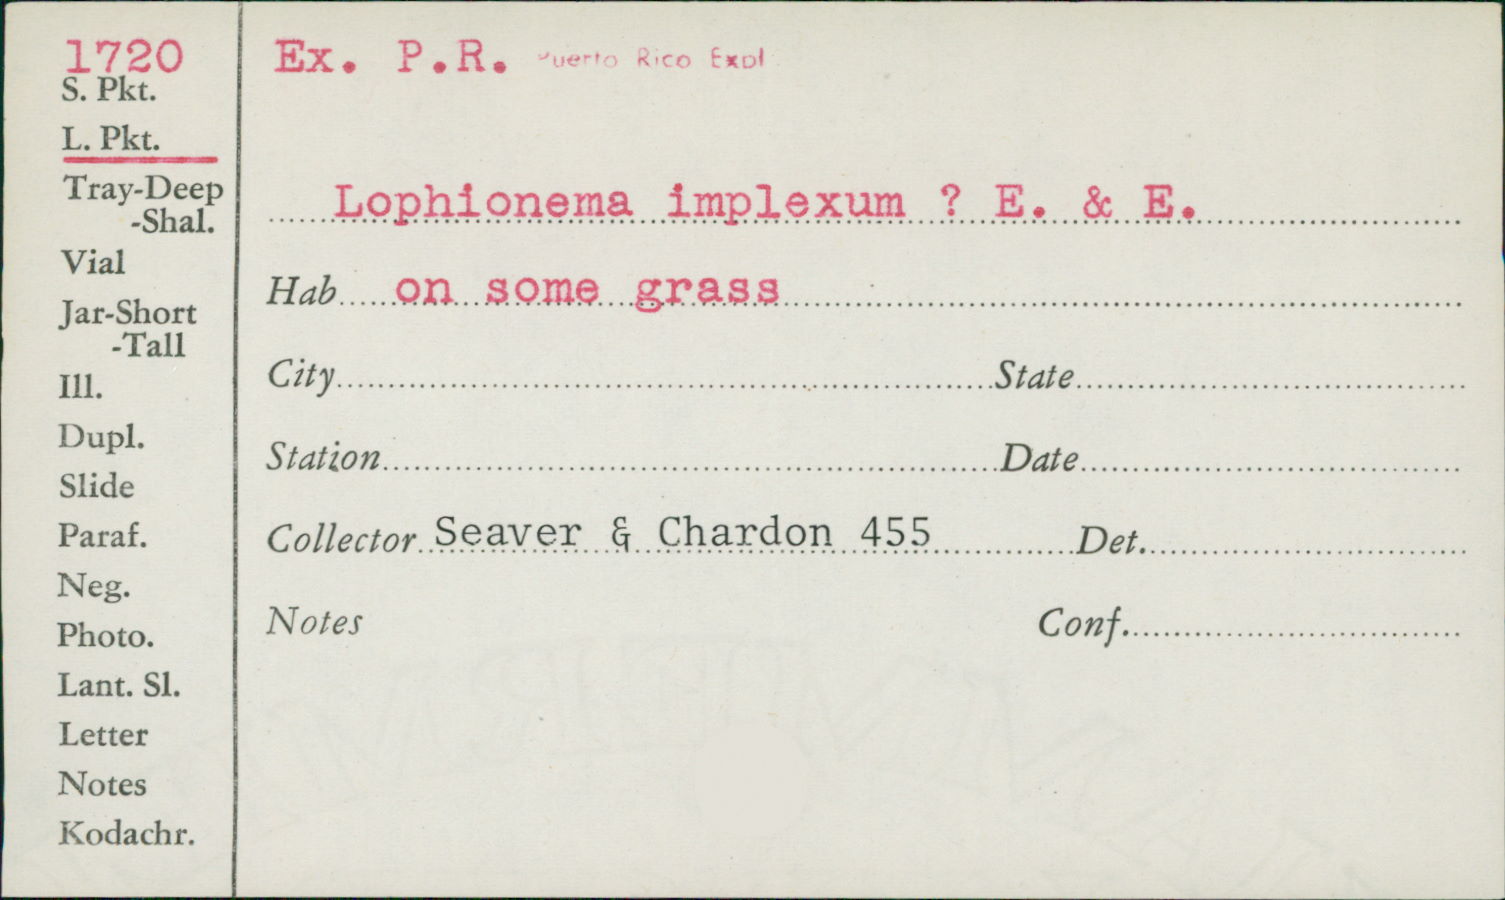 Lophionema implexum image